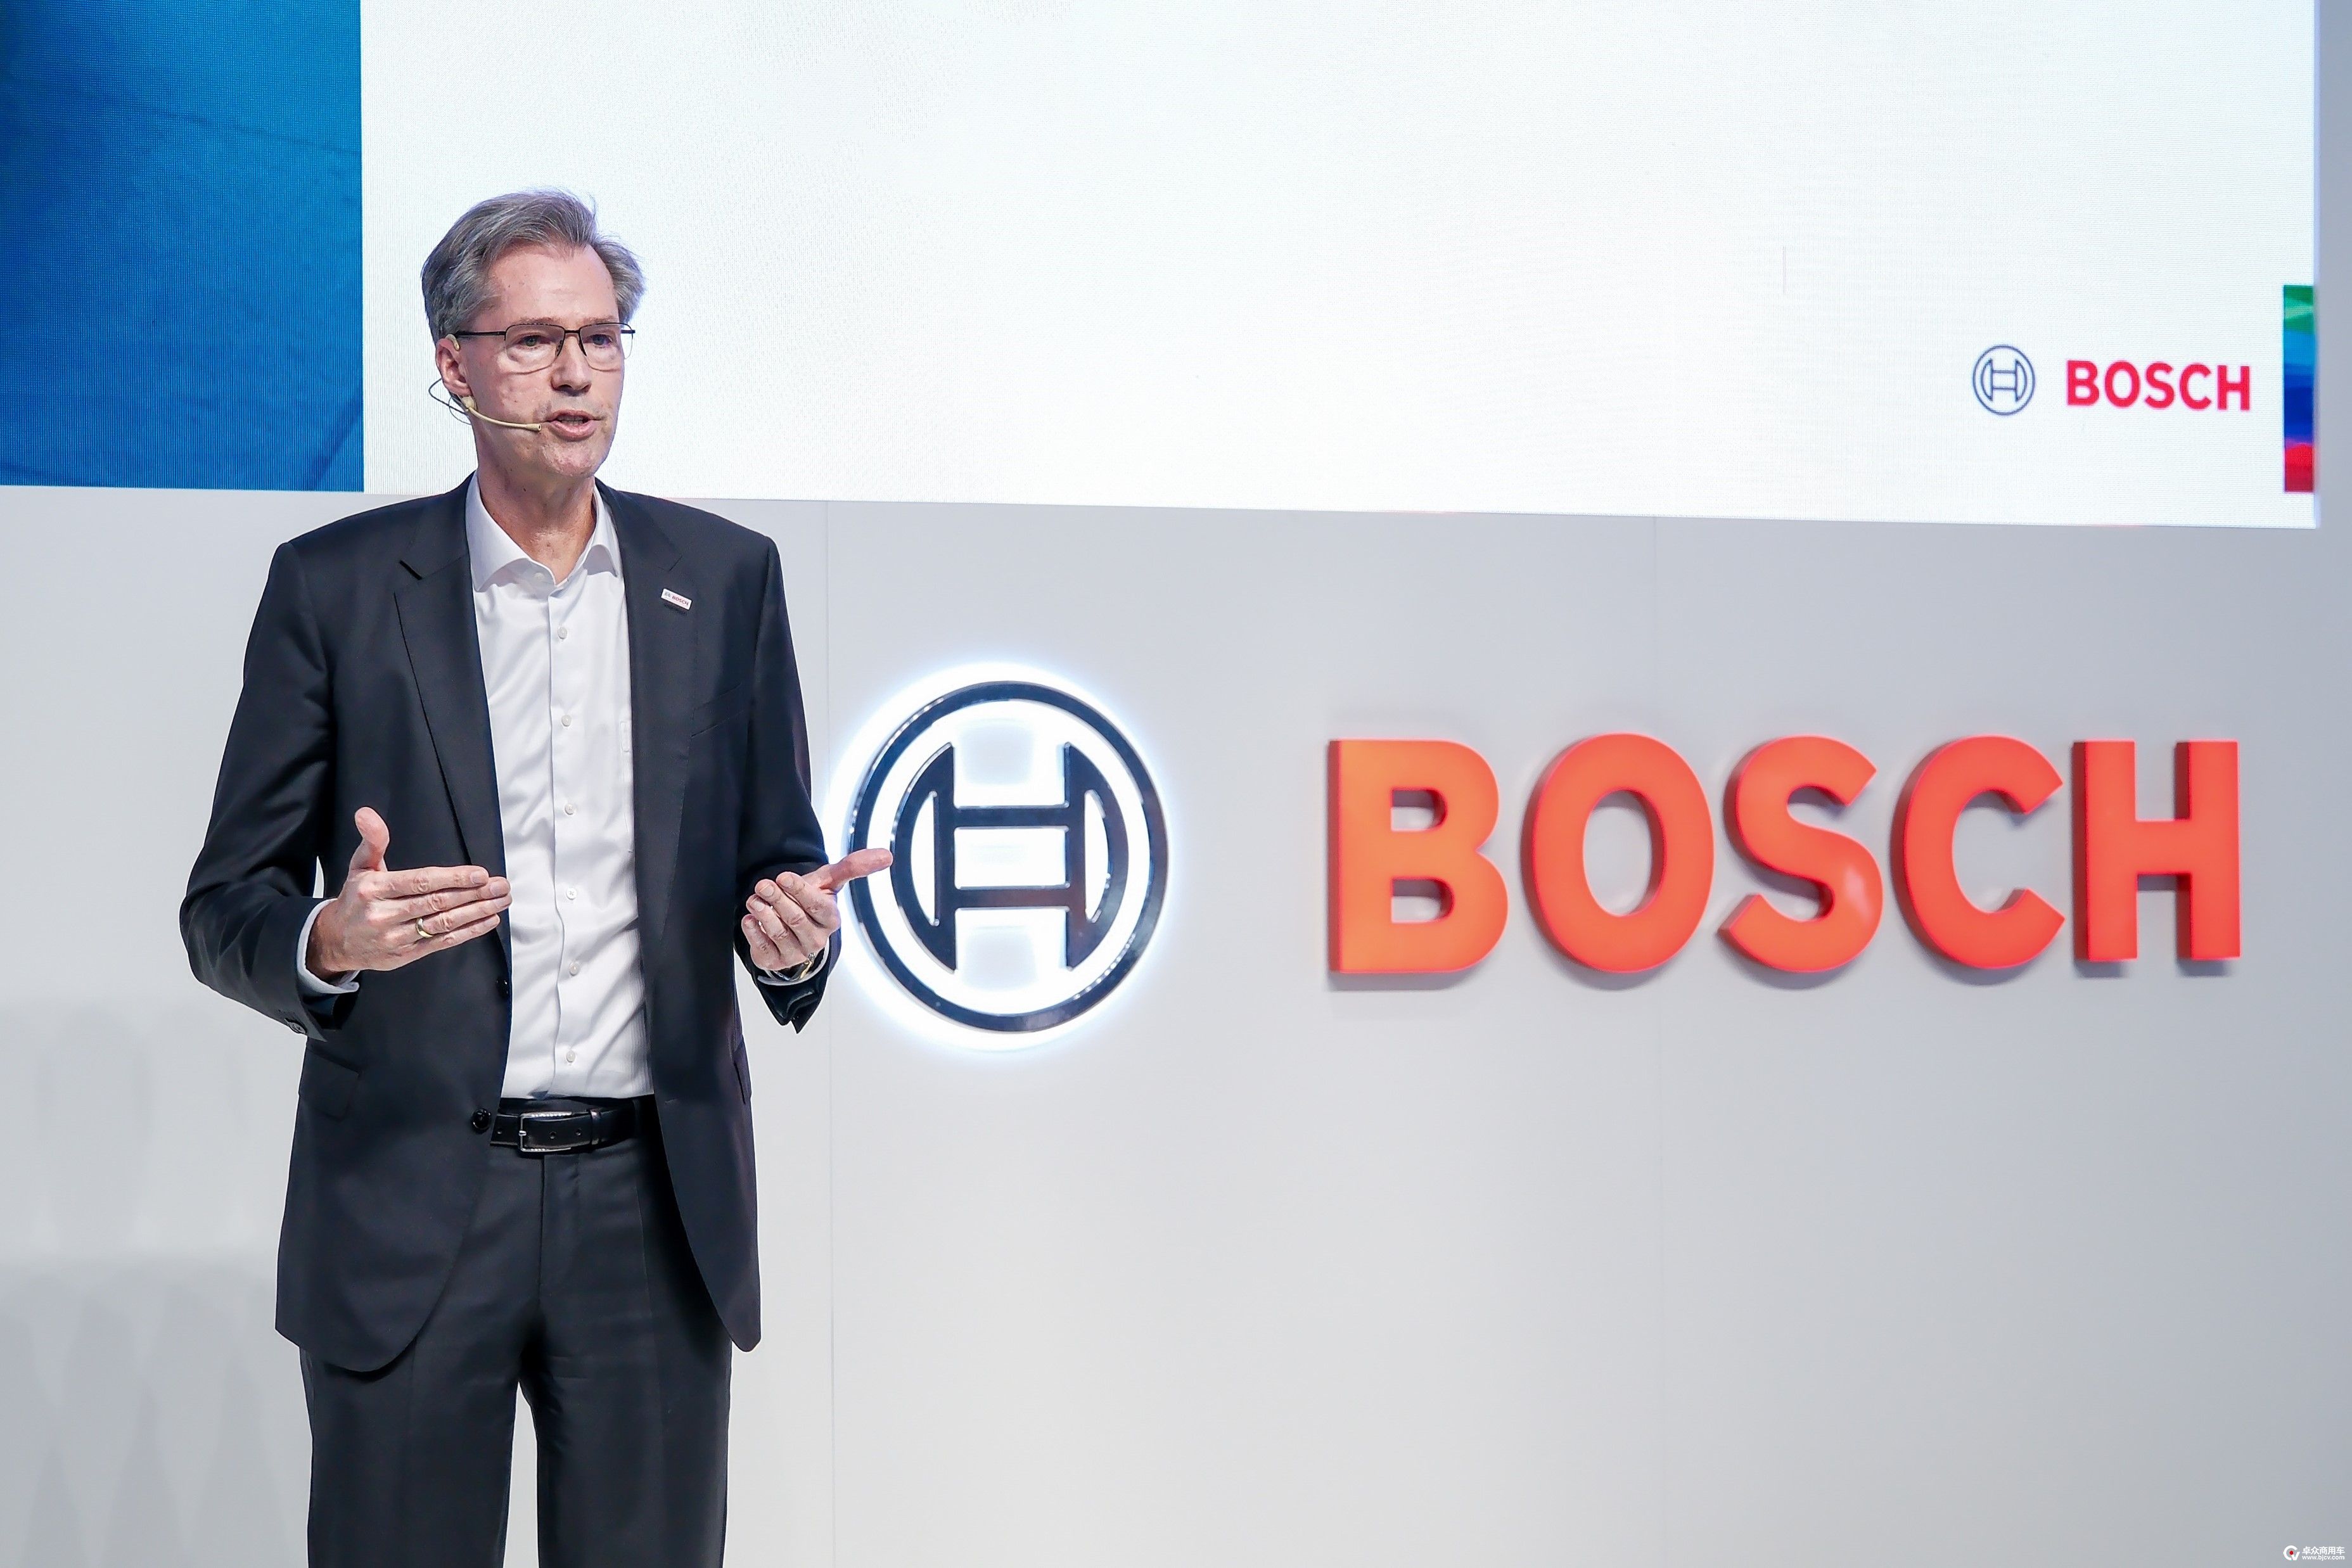 02 博世集团董事会成员及博世汽车与智能交通技术业务主席马库斯·海恩博士 Dr. Markus Heyn, member of the Bosch board of management and chairman of the Mobility_Solutions_business_sector.jpg